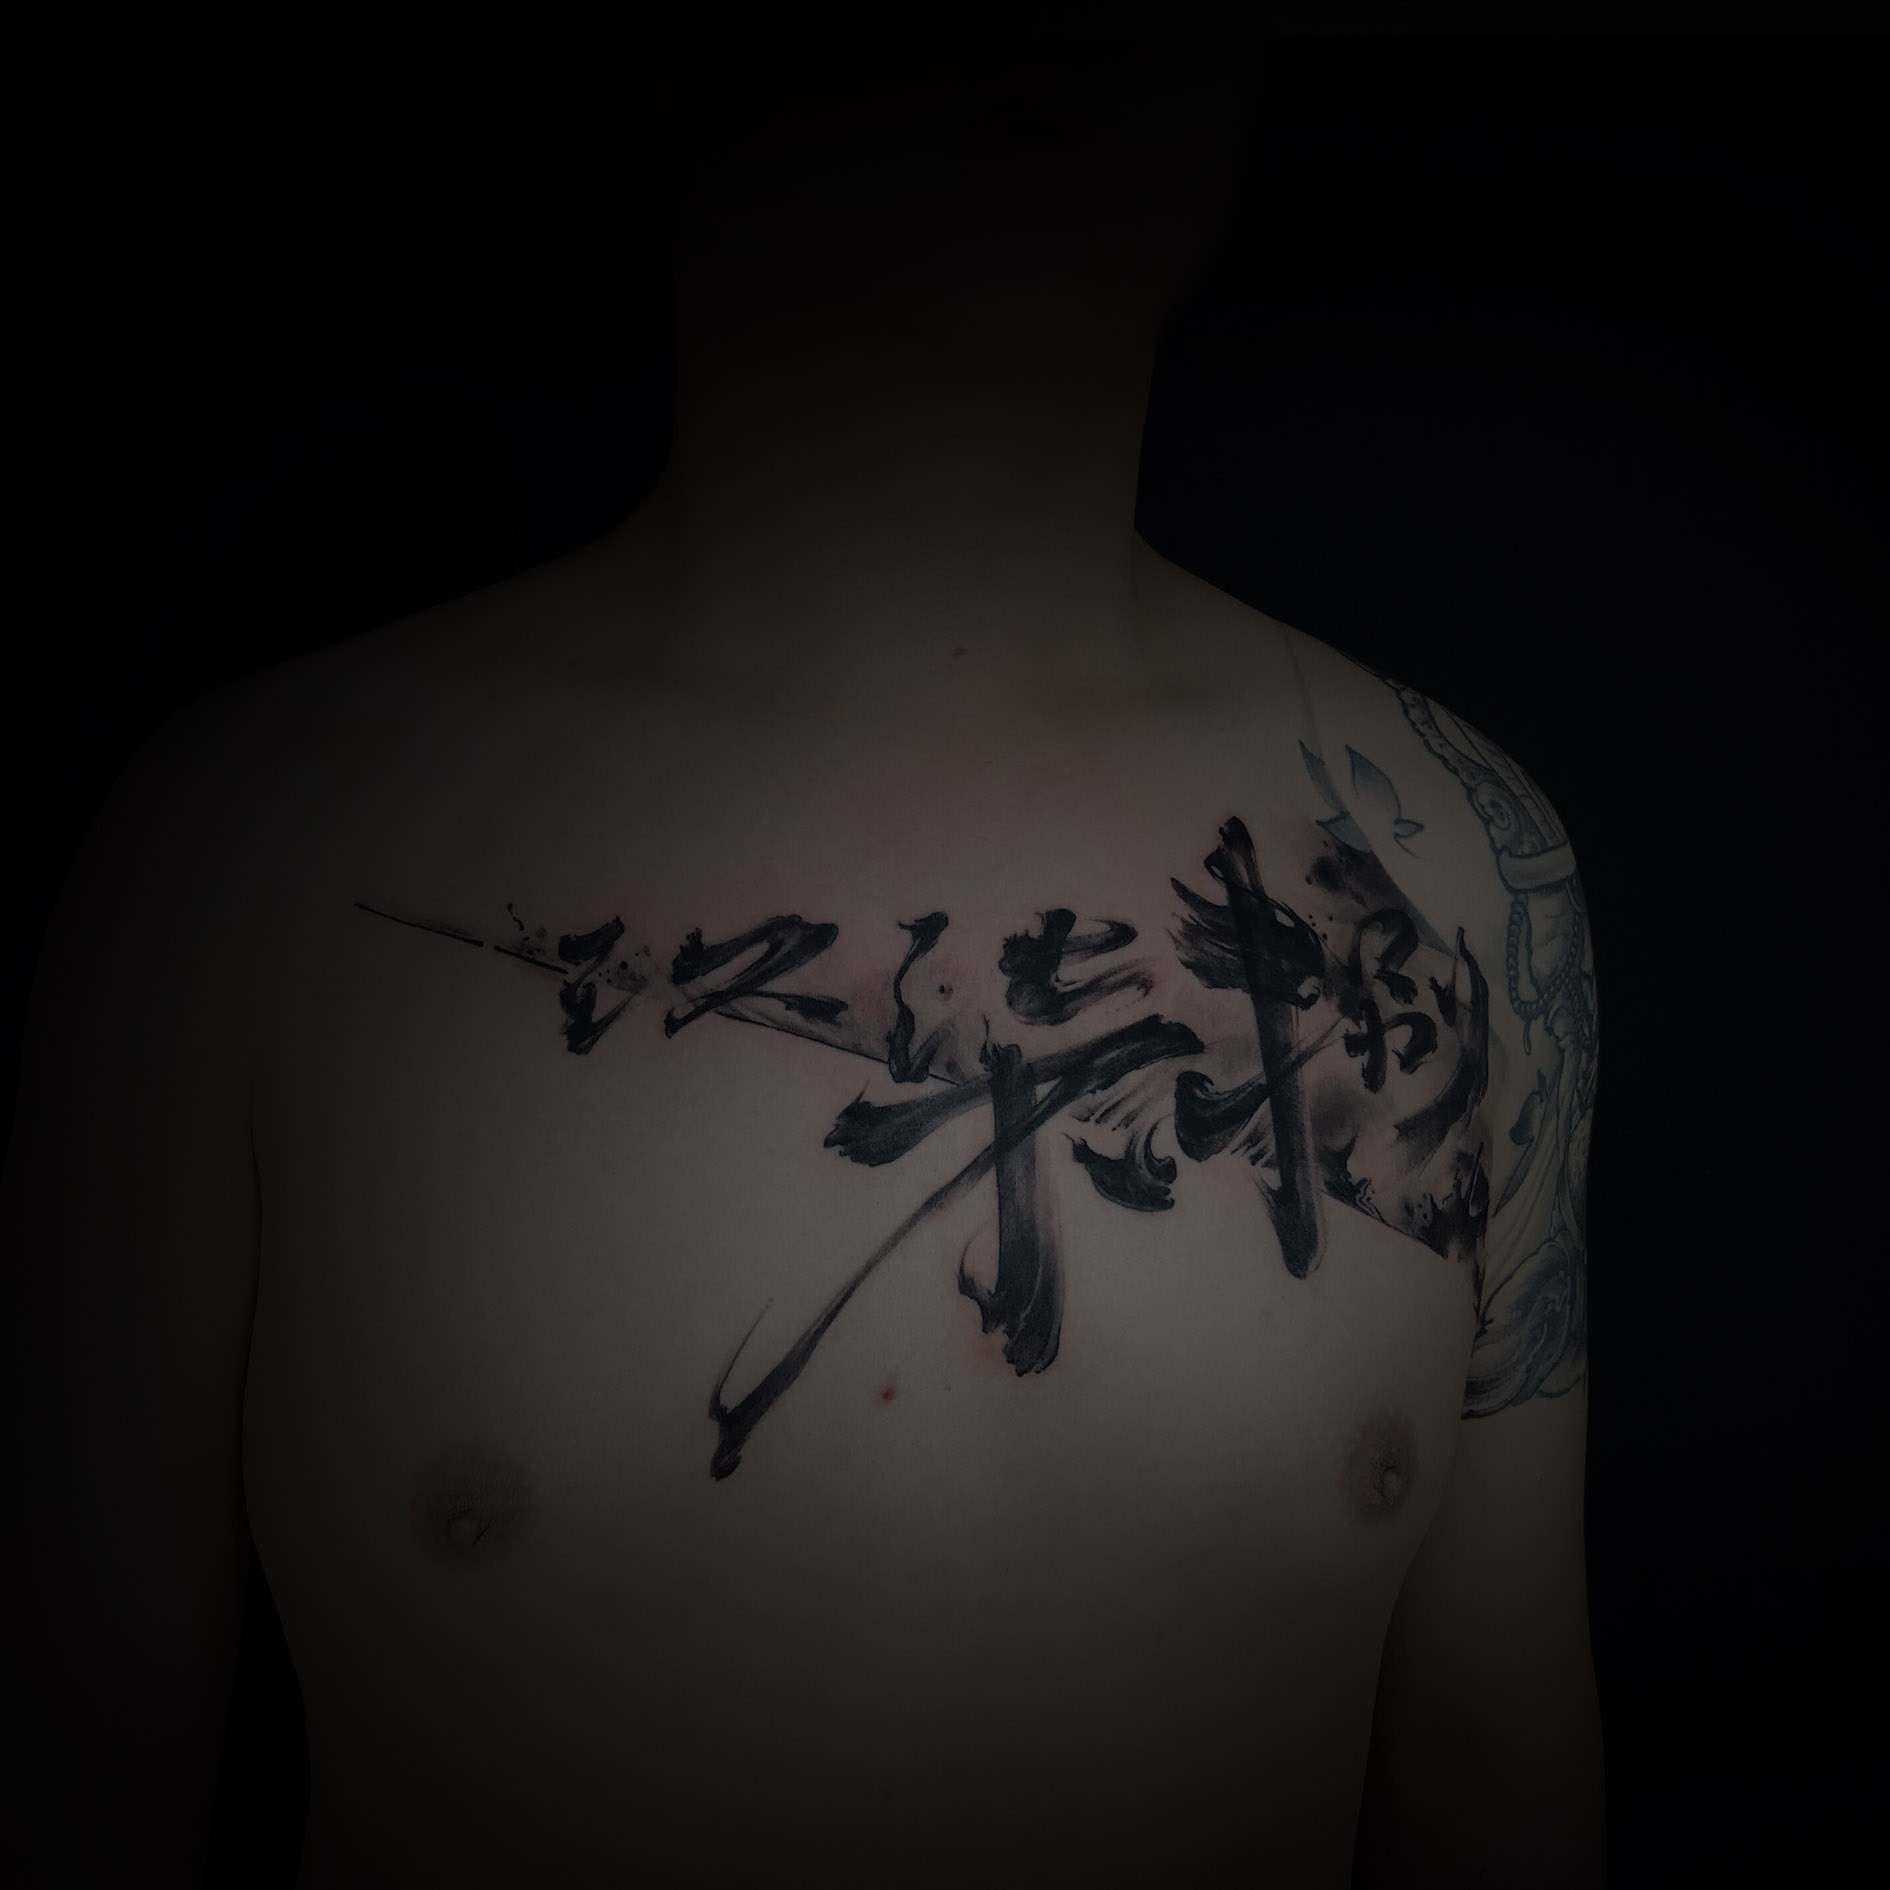 汉字纹身